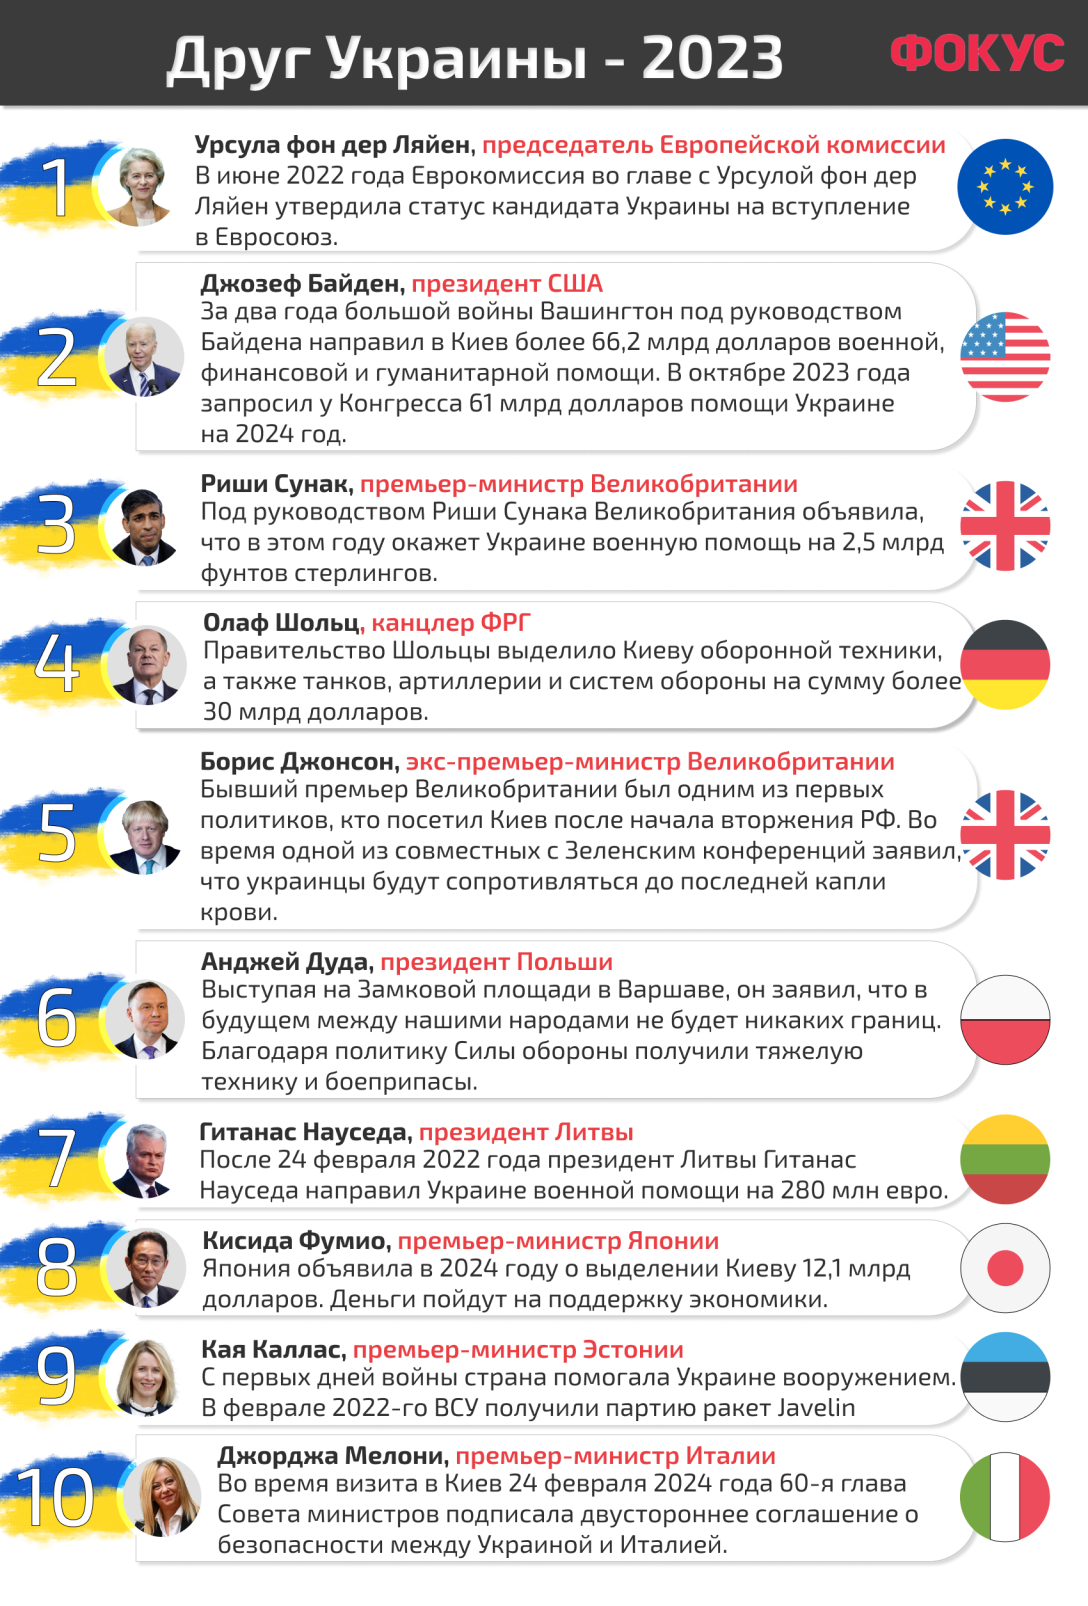 друг Украины - 2023, рейтинг Фокуса, рейтинг друзей Украины, друзья Украины, российско-украинская война